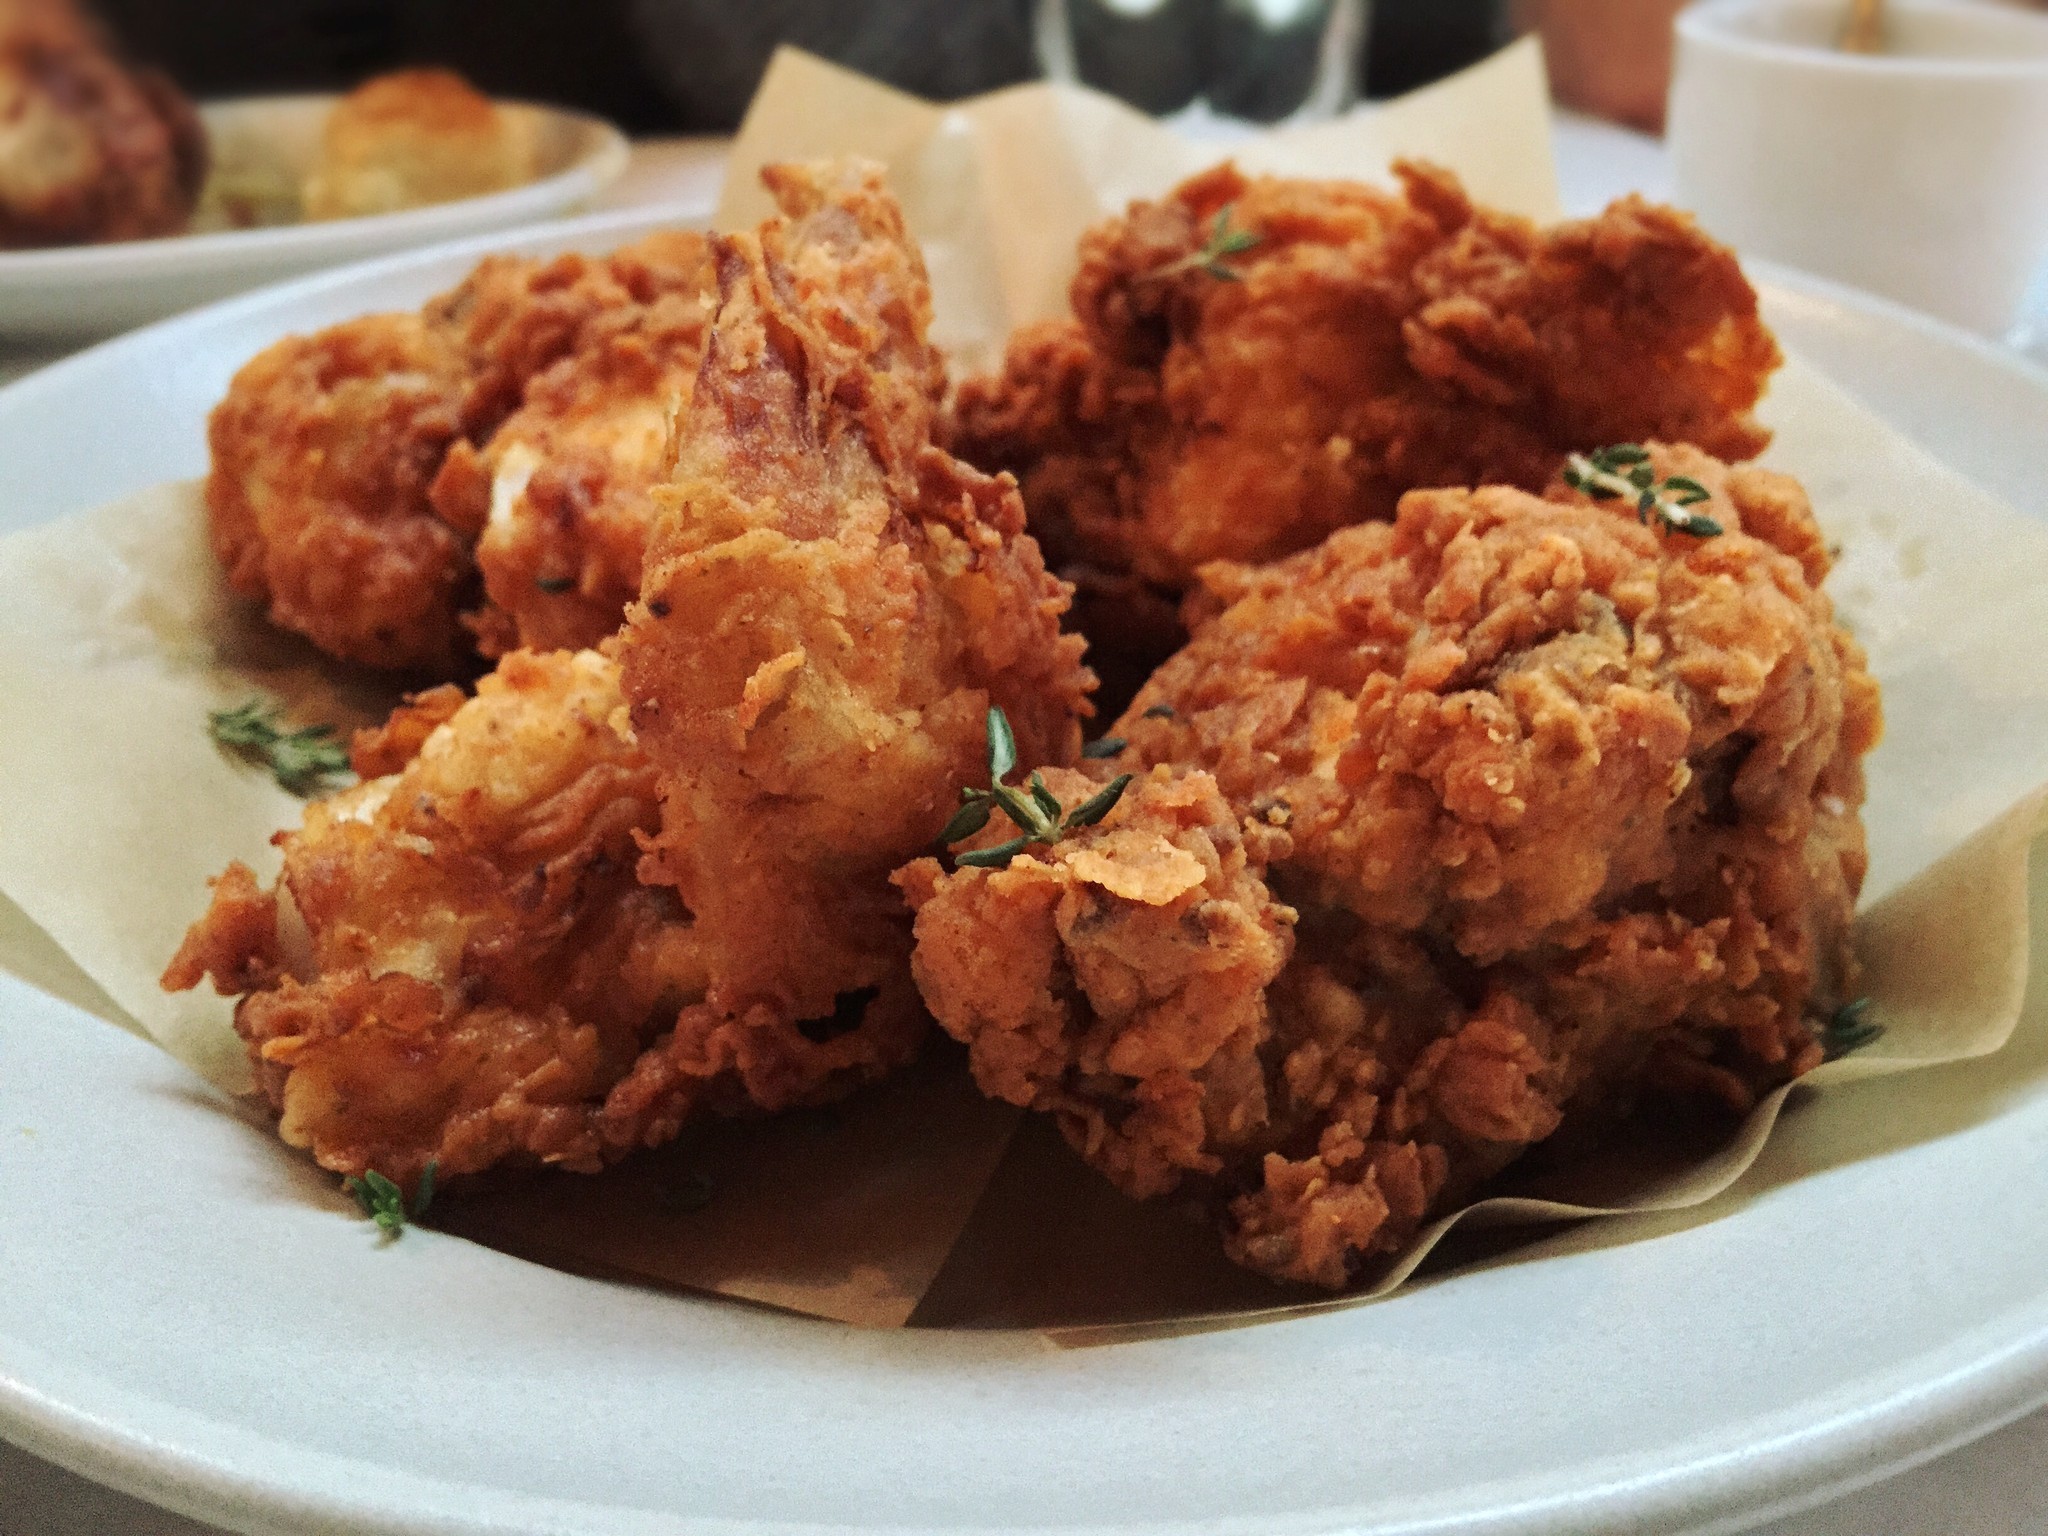 Best fried chicken in Los Angeles - LA Times